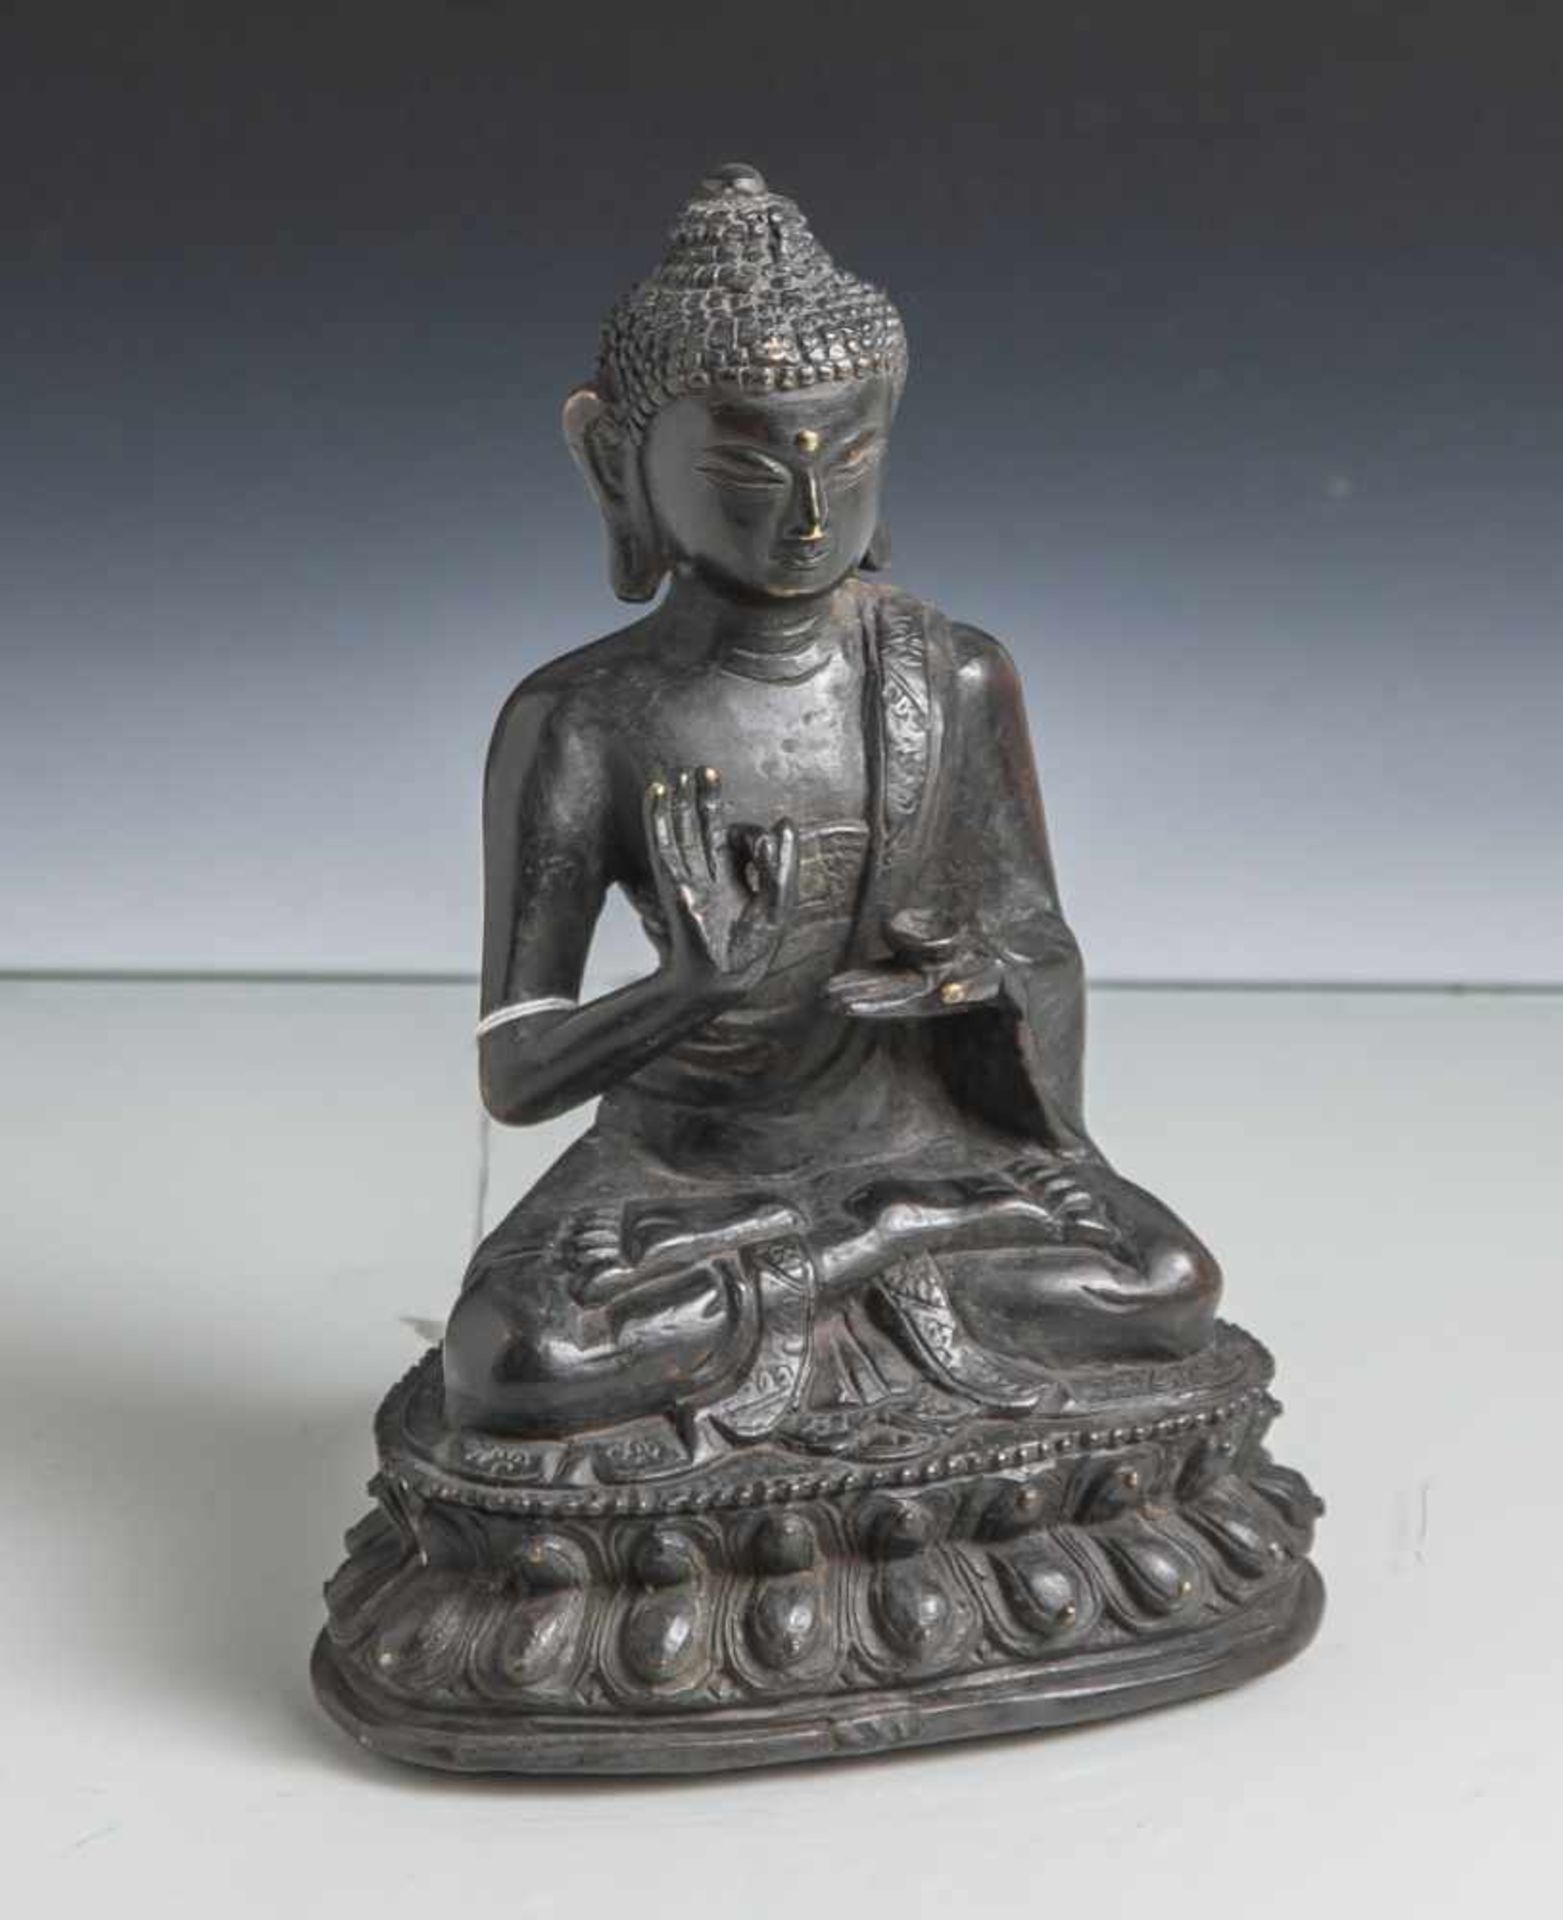 Bronzebuddha, wohl Indien, 19. Jahrhundert, im Lotossitz, die Hände im Vitarka mudra. Auf